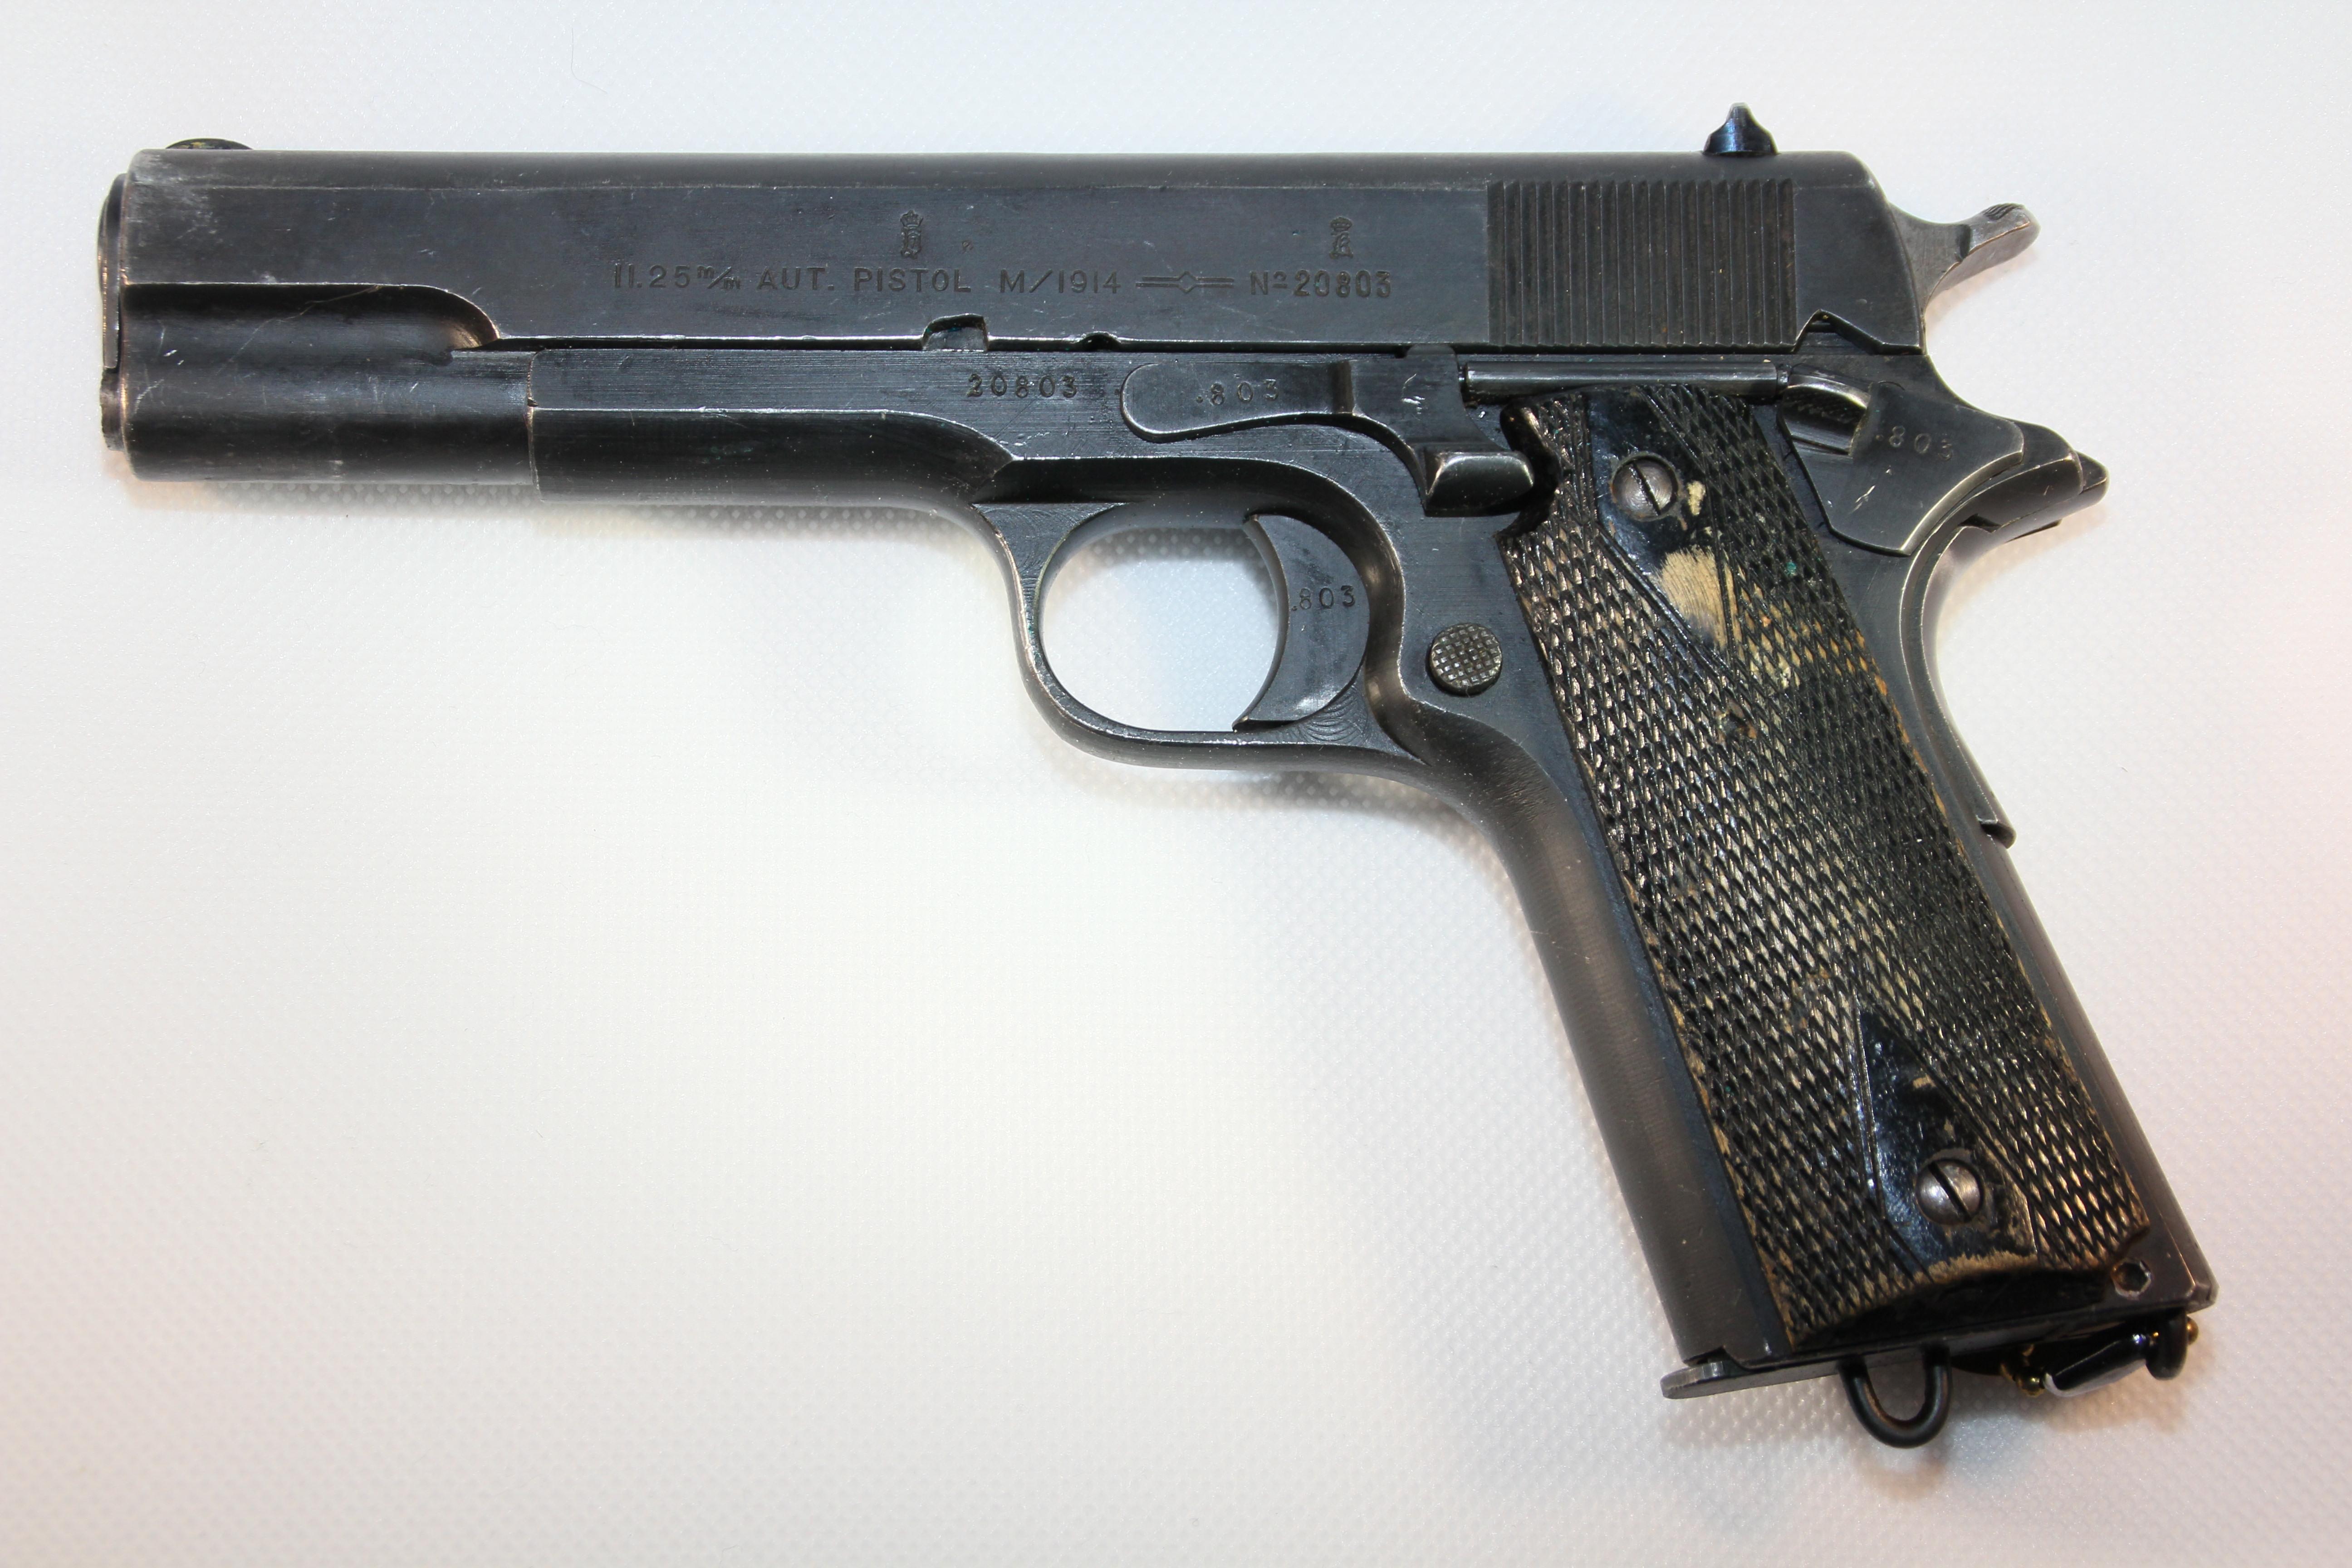 ./guns/pistol/bilder/Pistol-Kongsberg-M1914-1929-1.JPG